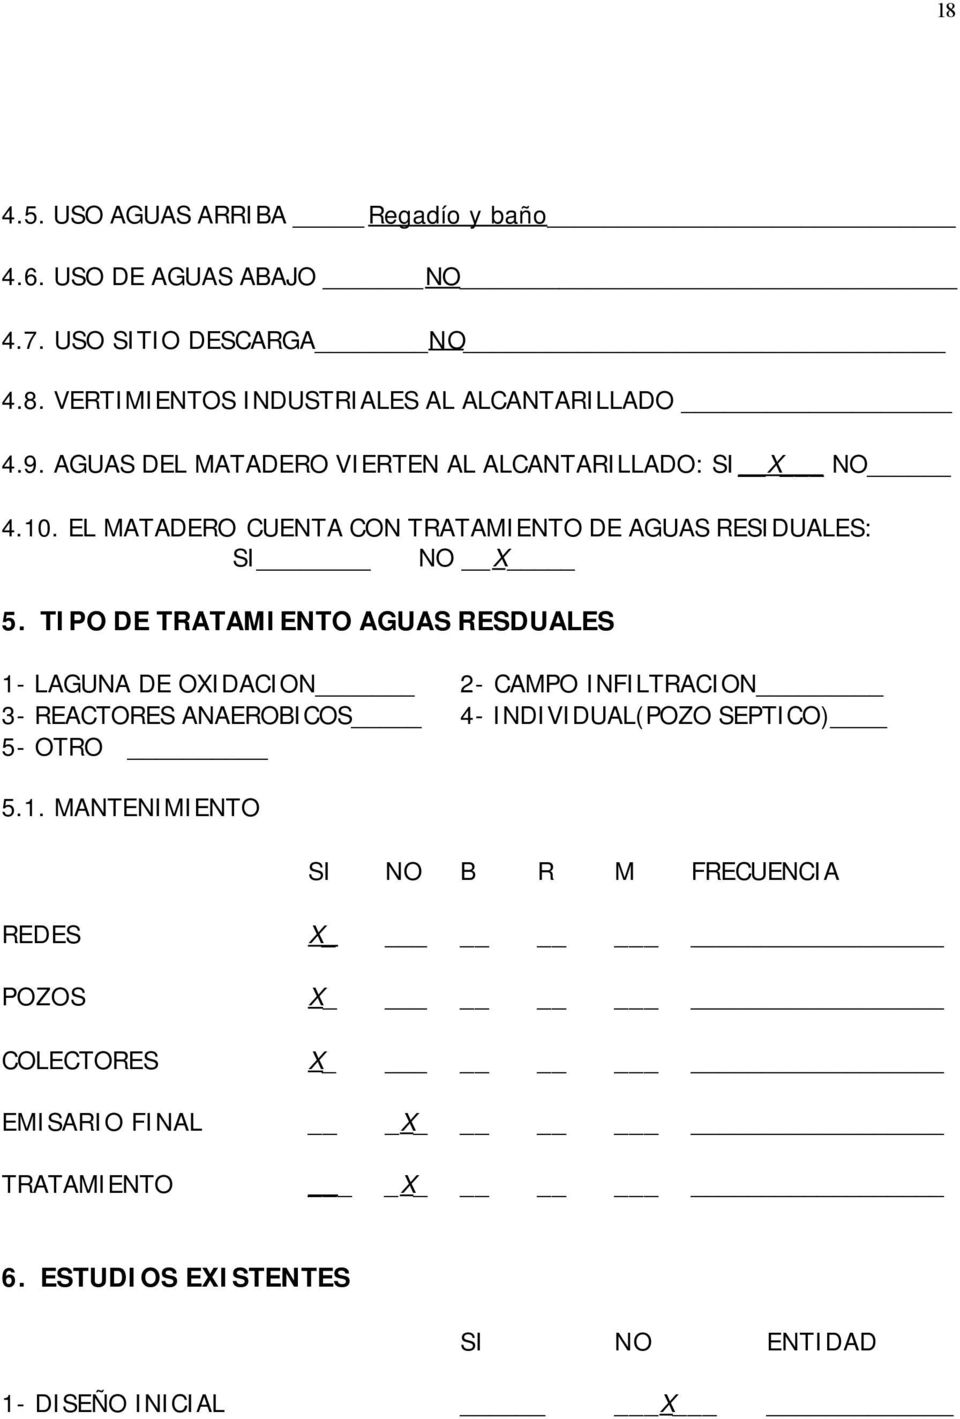 TIPO DE TRATAMIENTO AGUAS RESDUALES 1- LAGUNA DE OXIDACION 2- CAMPO INFILTRACION 3- REACTORES ANAEROBICOS 4- INDIVIDUAL(POZO SEPTICO) 5- OTRO 5.